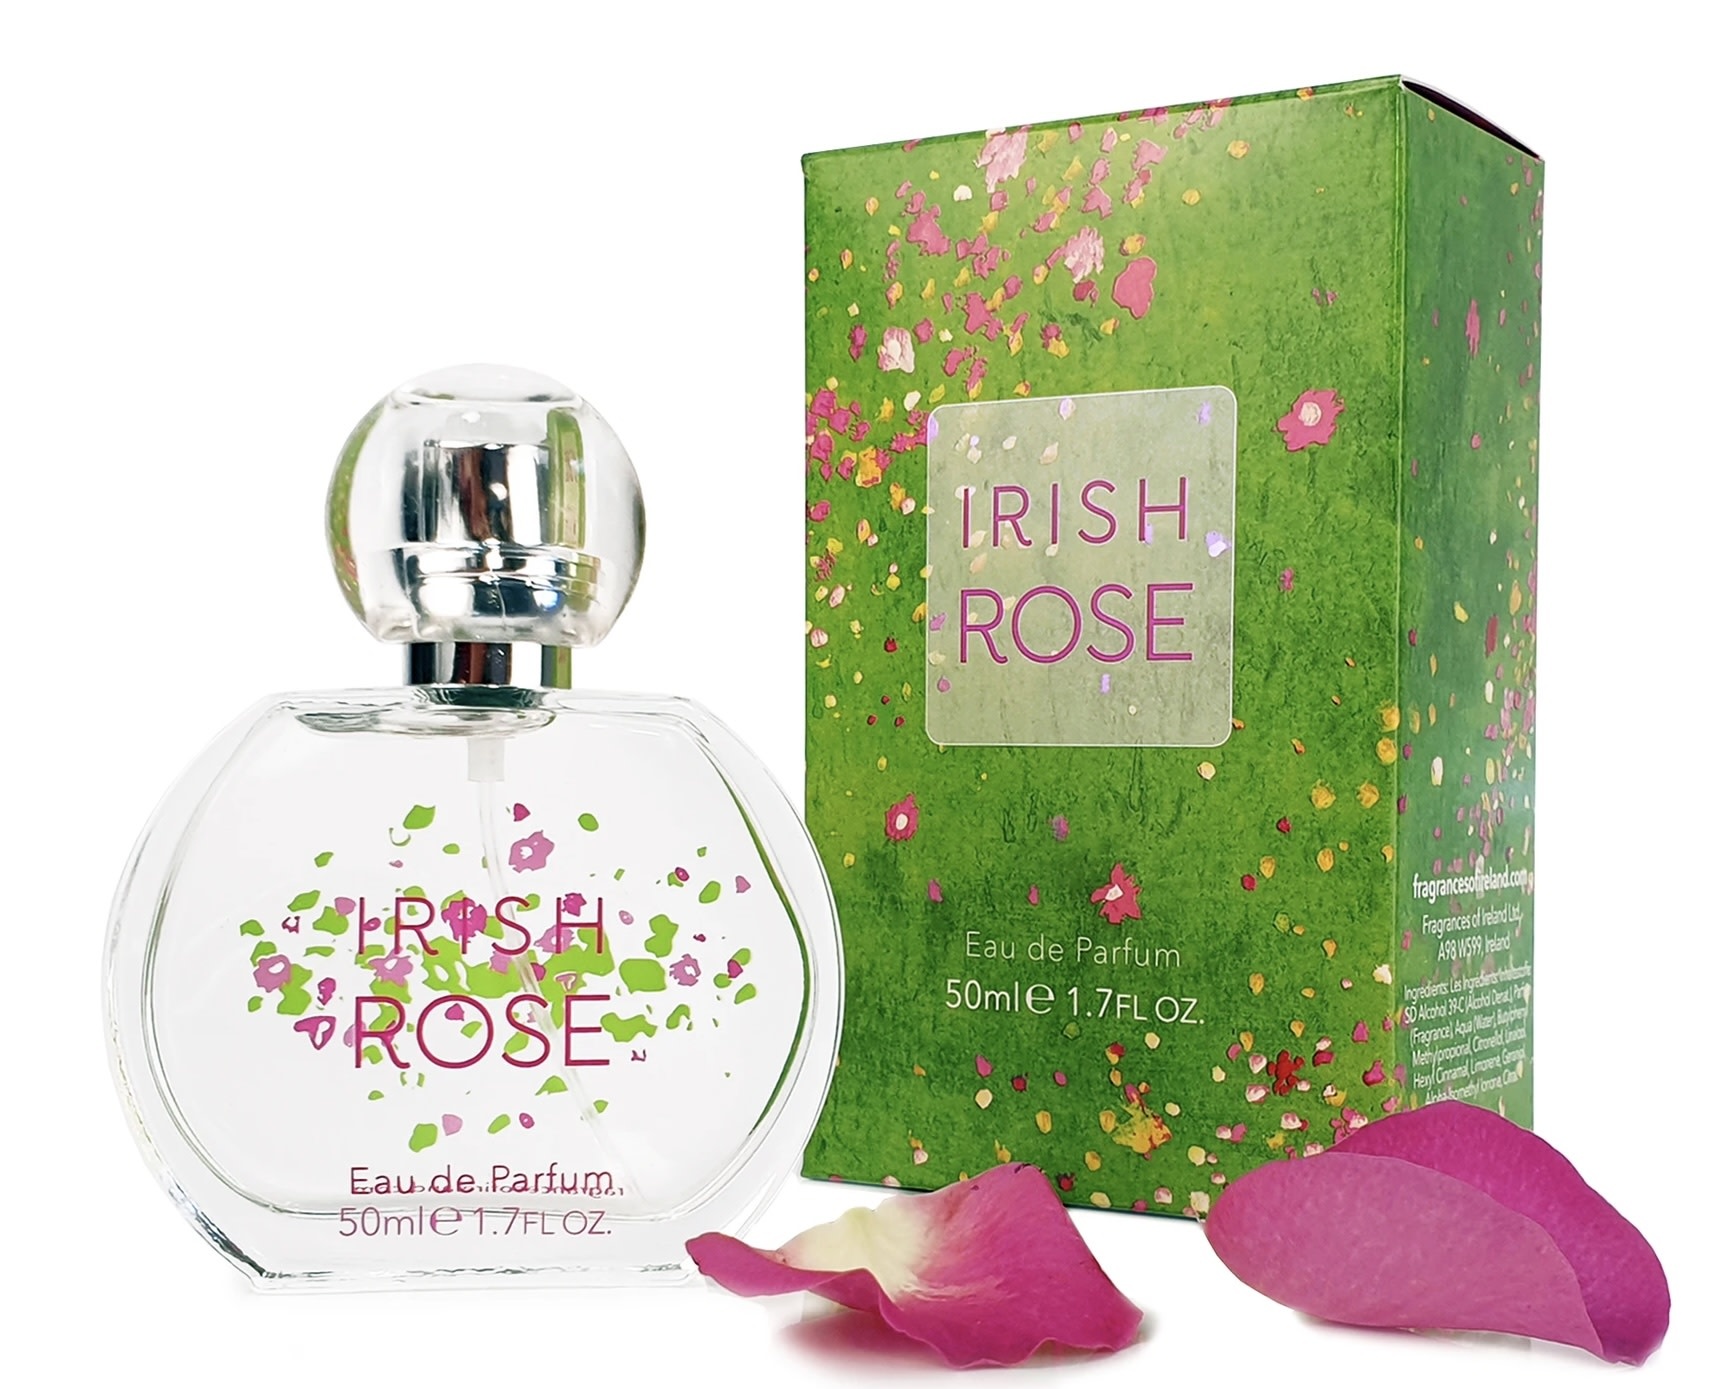 Perfume: Irish Rose (formally Inis Arose)